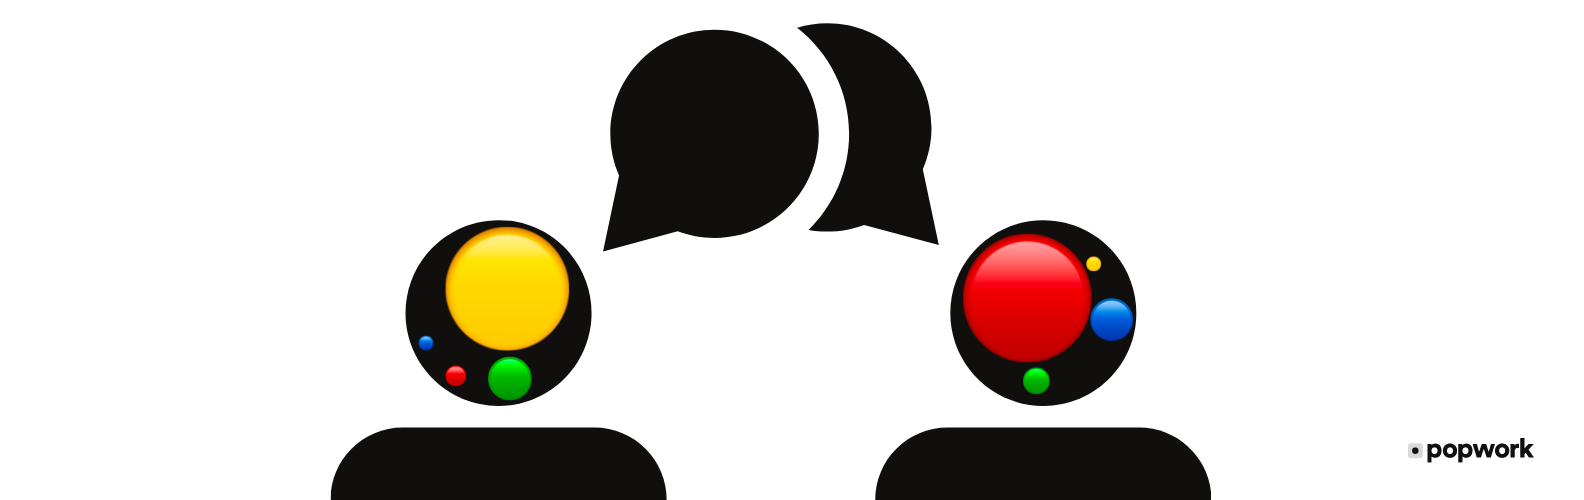 Profil Influent (jaune) s'adressant à un profil Dominant (rouge) - Popwork